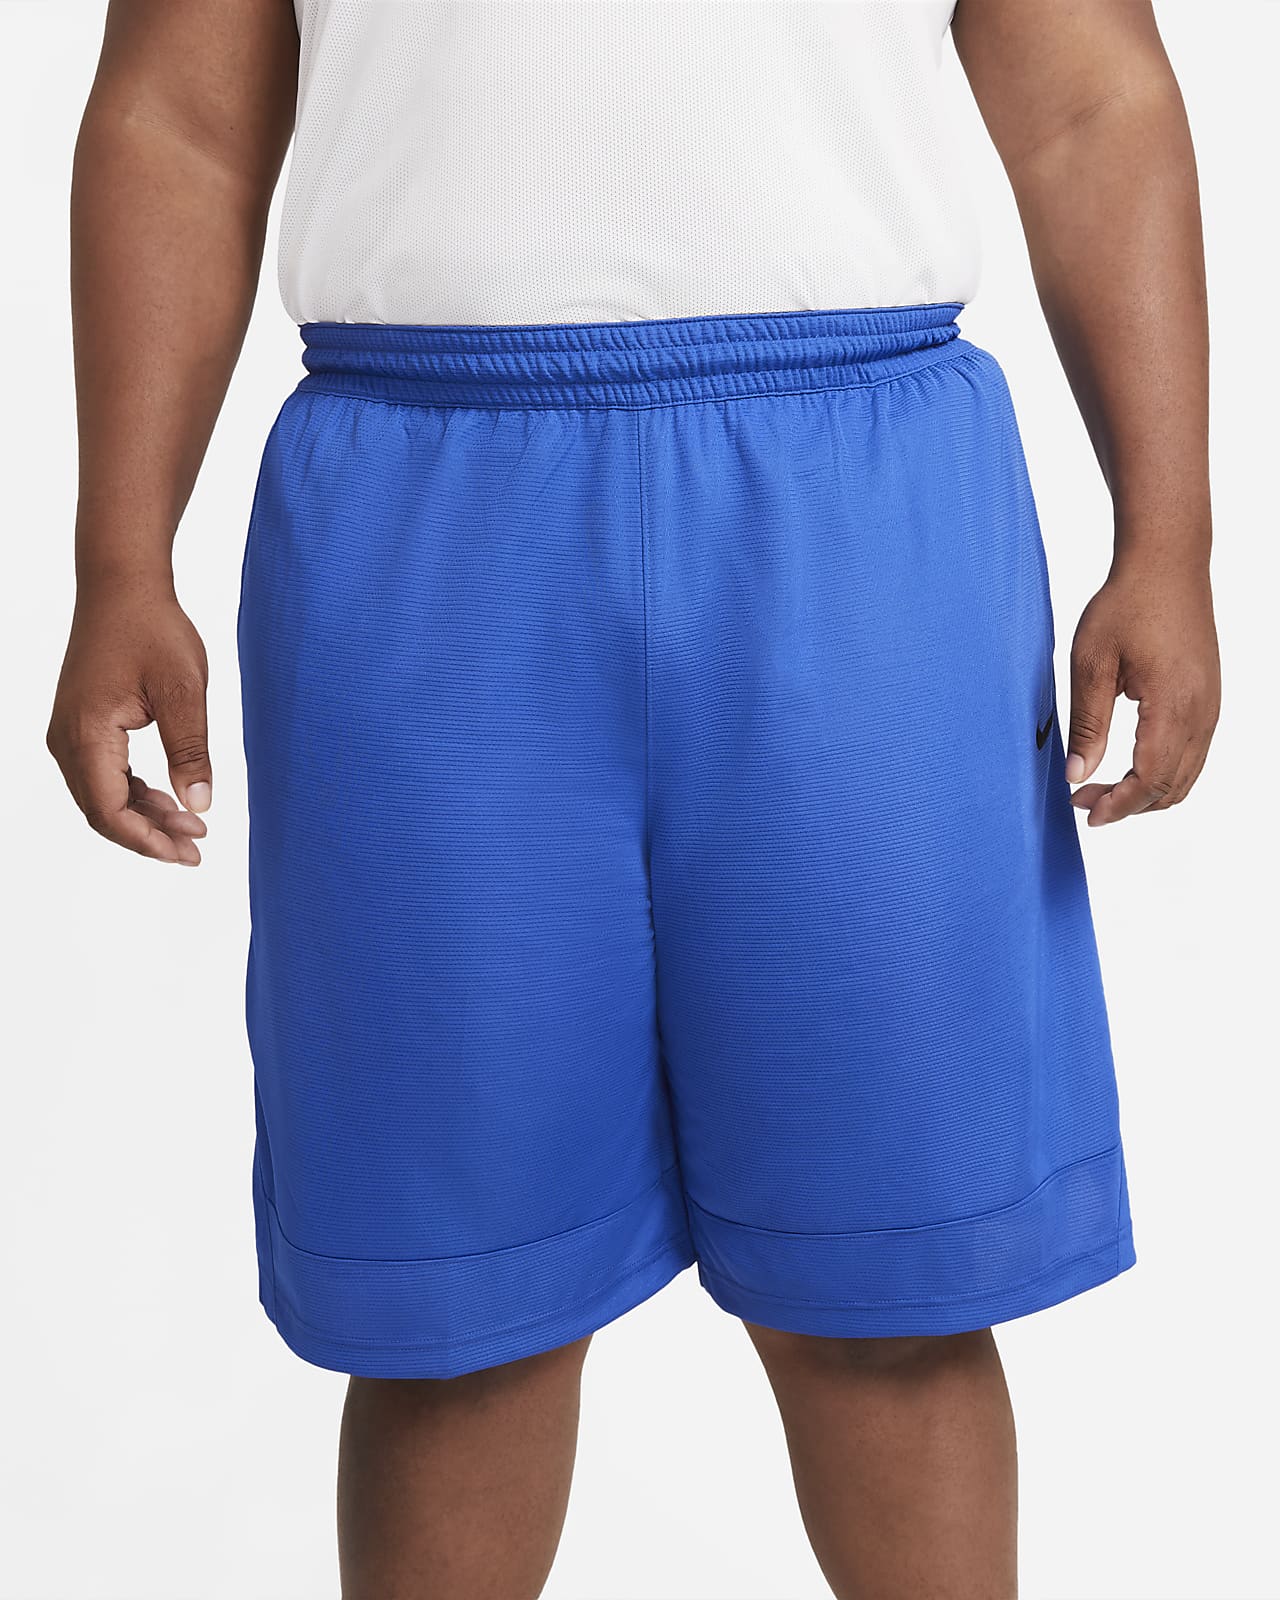 Nike Dri-FIT Icon Men's Basketball Shorts. Nike.com